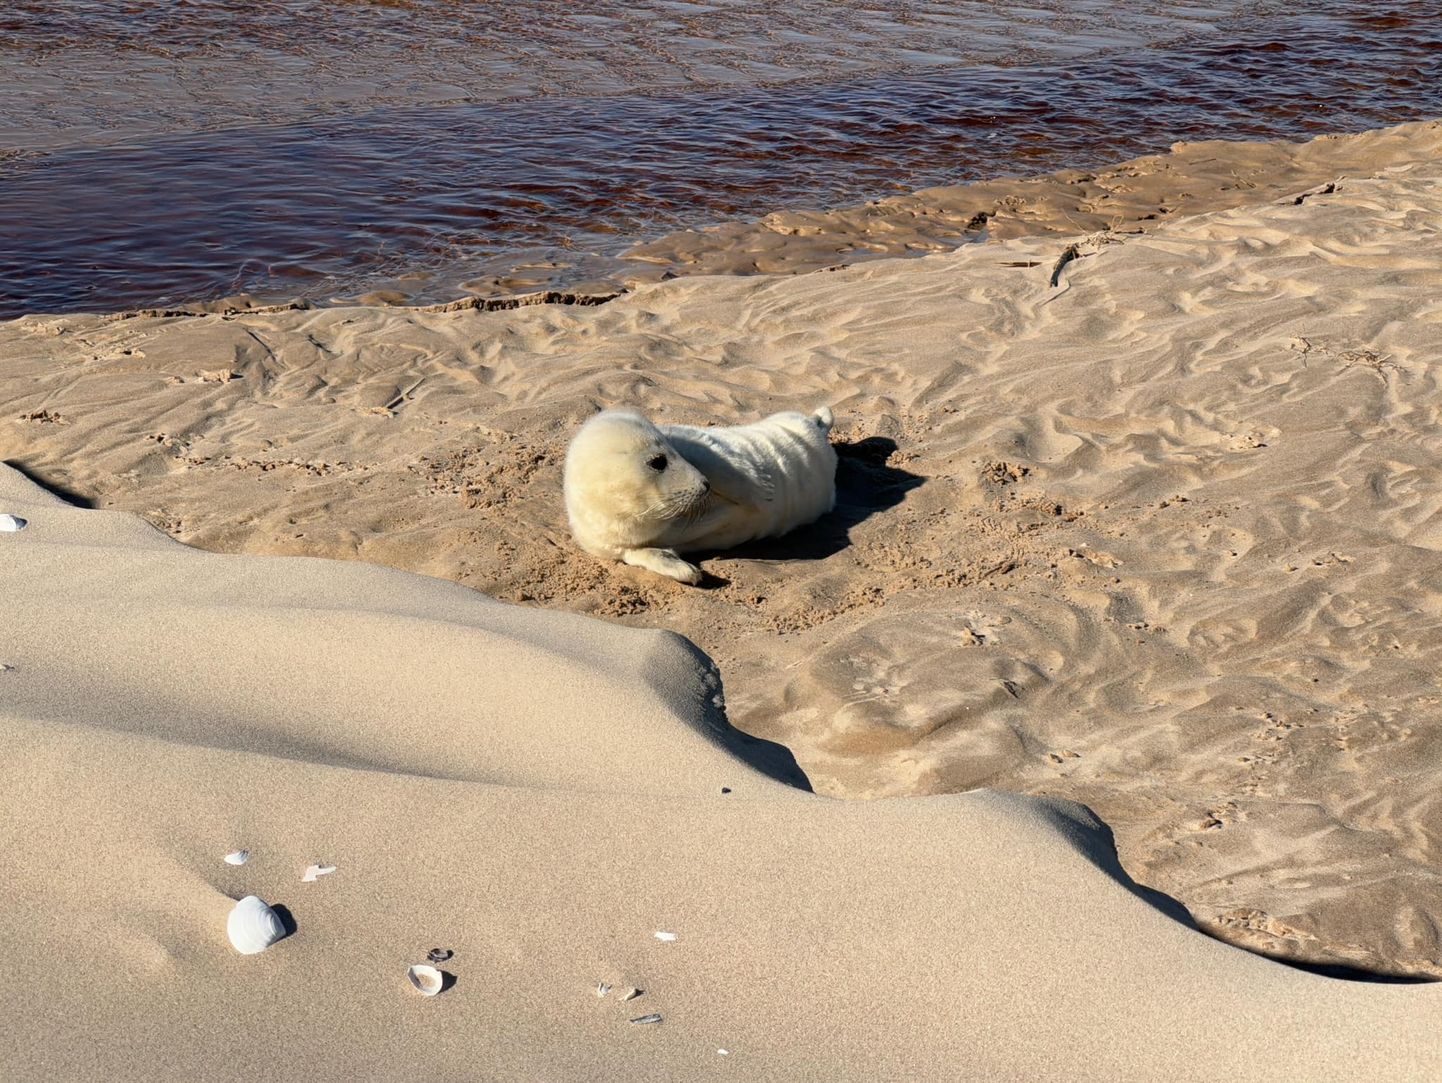 "Pirmais tūrists ieradies!" Ventspils novadā manīts roņu mazulis.